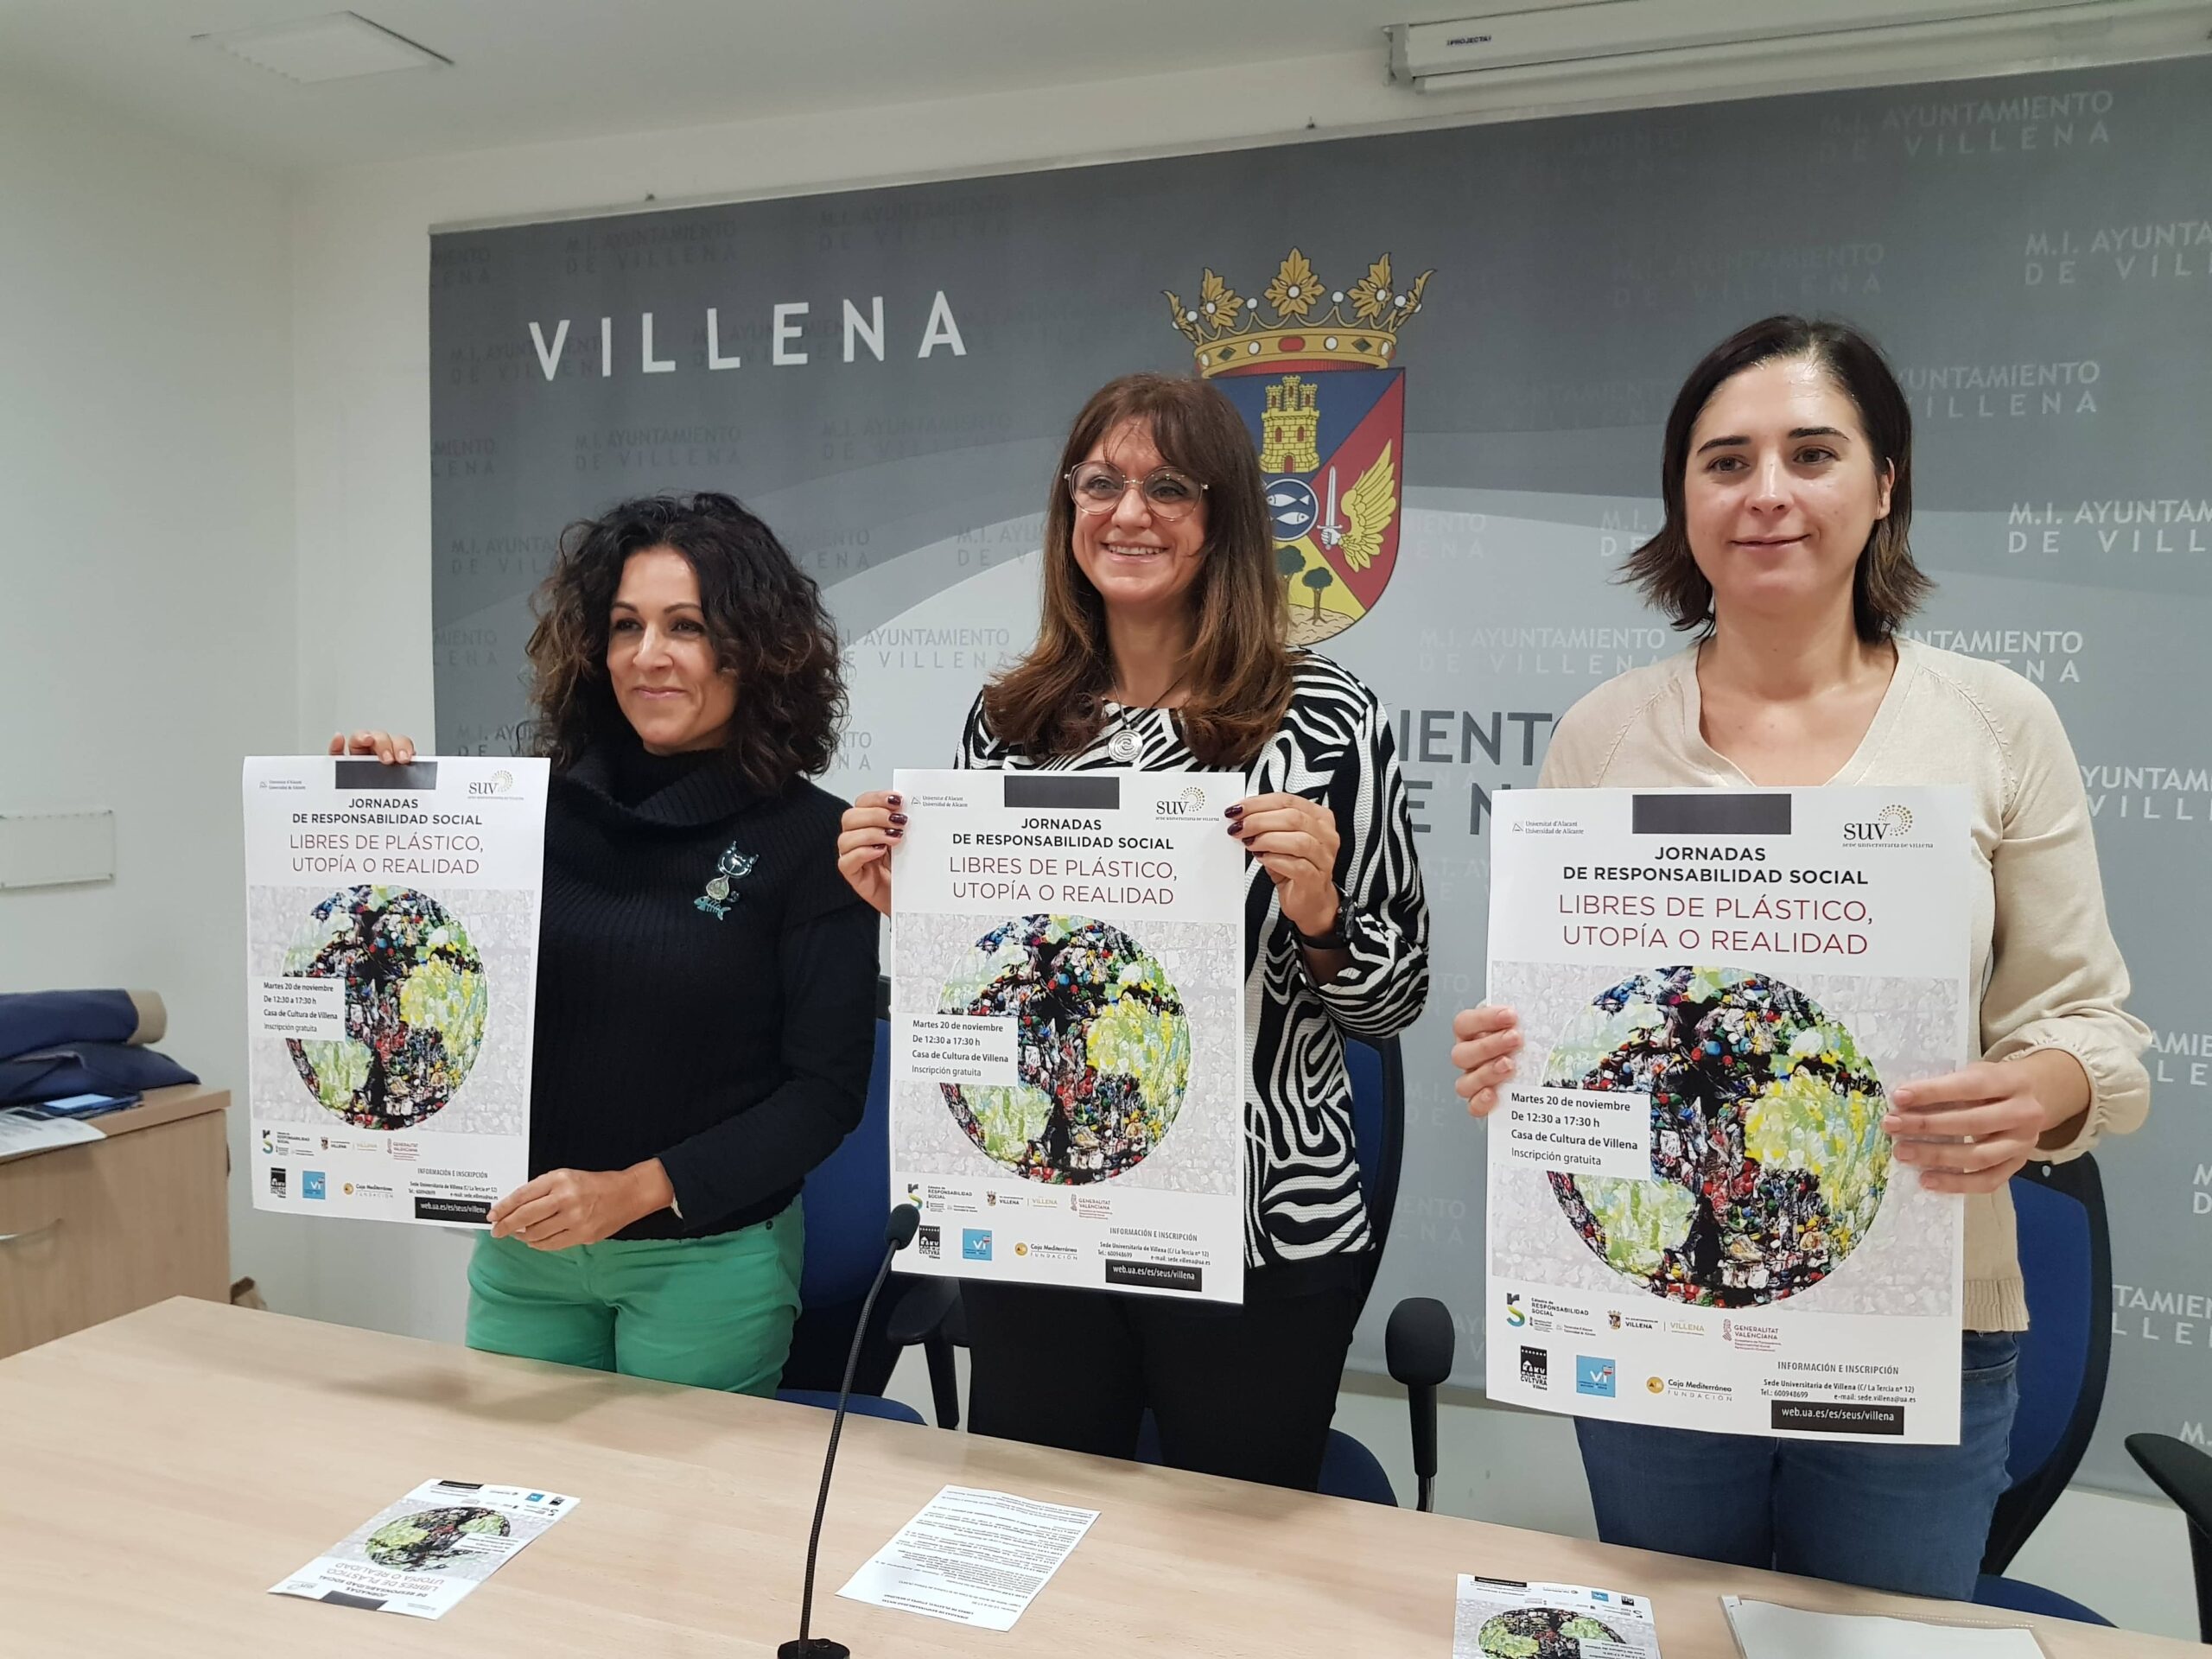 La Sede Universitaria de Villena organiza unas jornadas sobre alternativas al abuso de plásticos